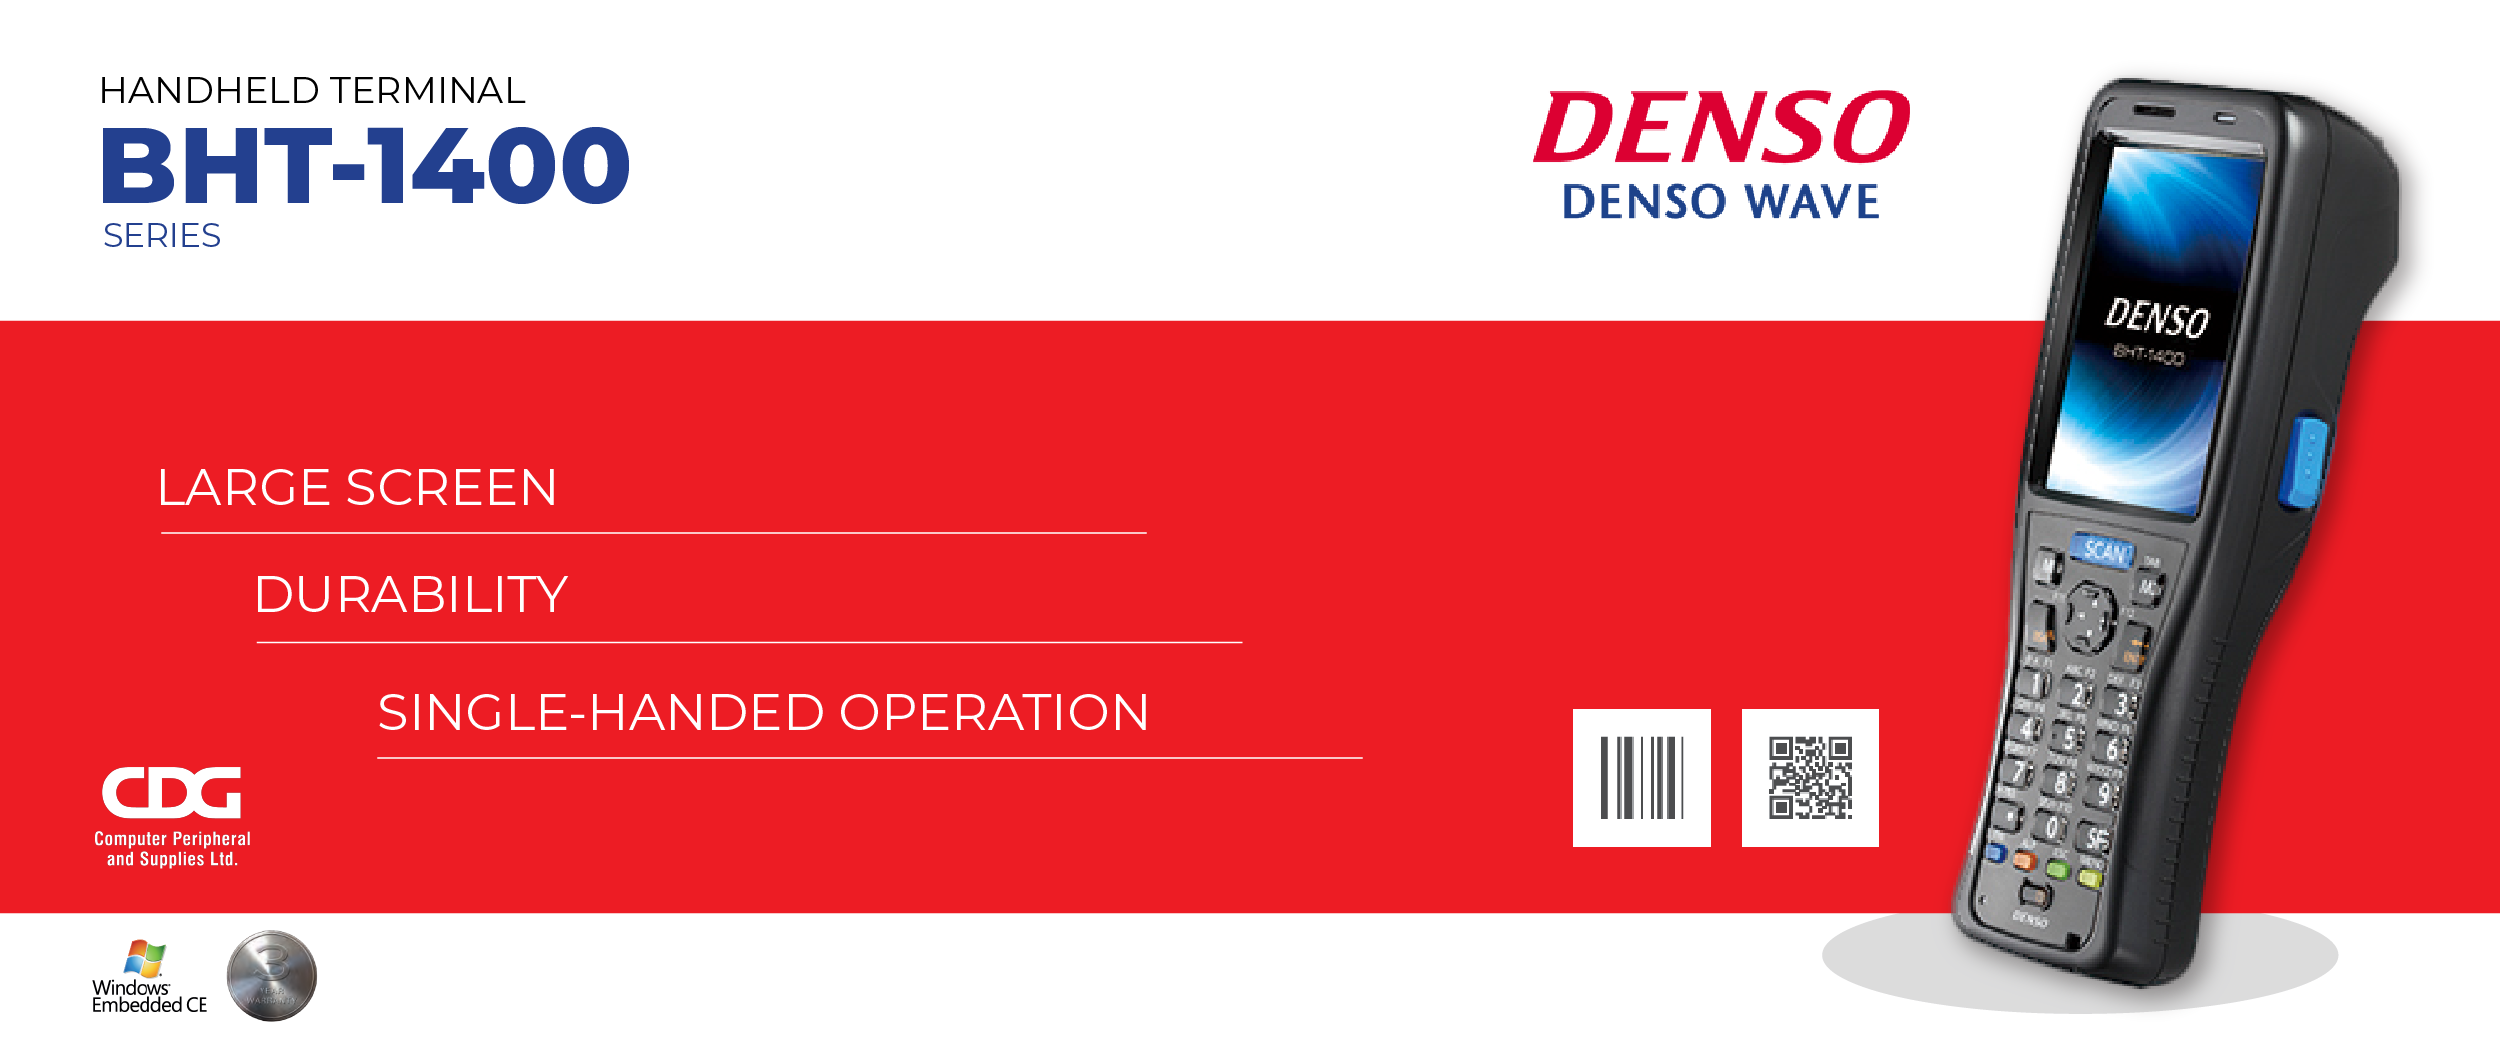 เครื่องอ่านบาร์โค้ด Hand-held Terminal Denso BHT-1400 Series